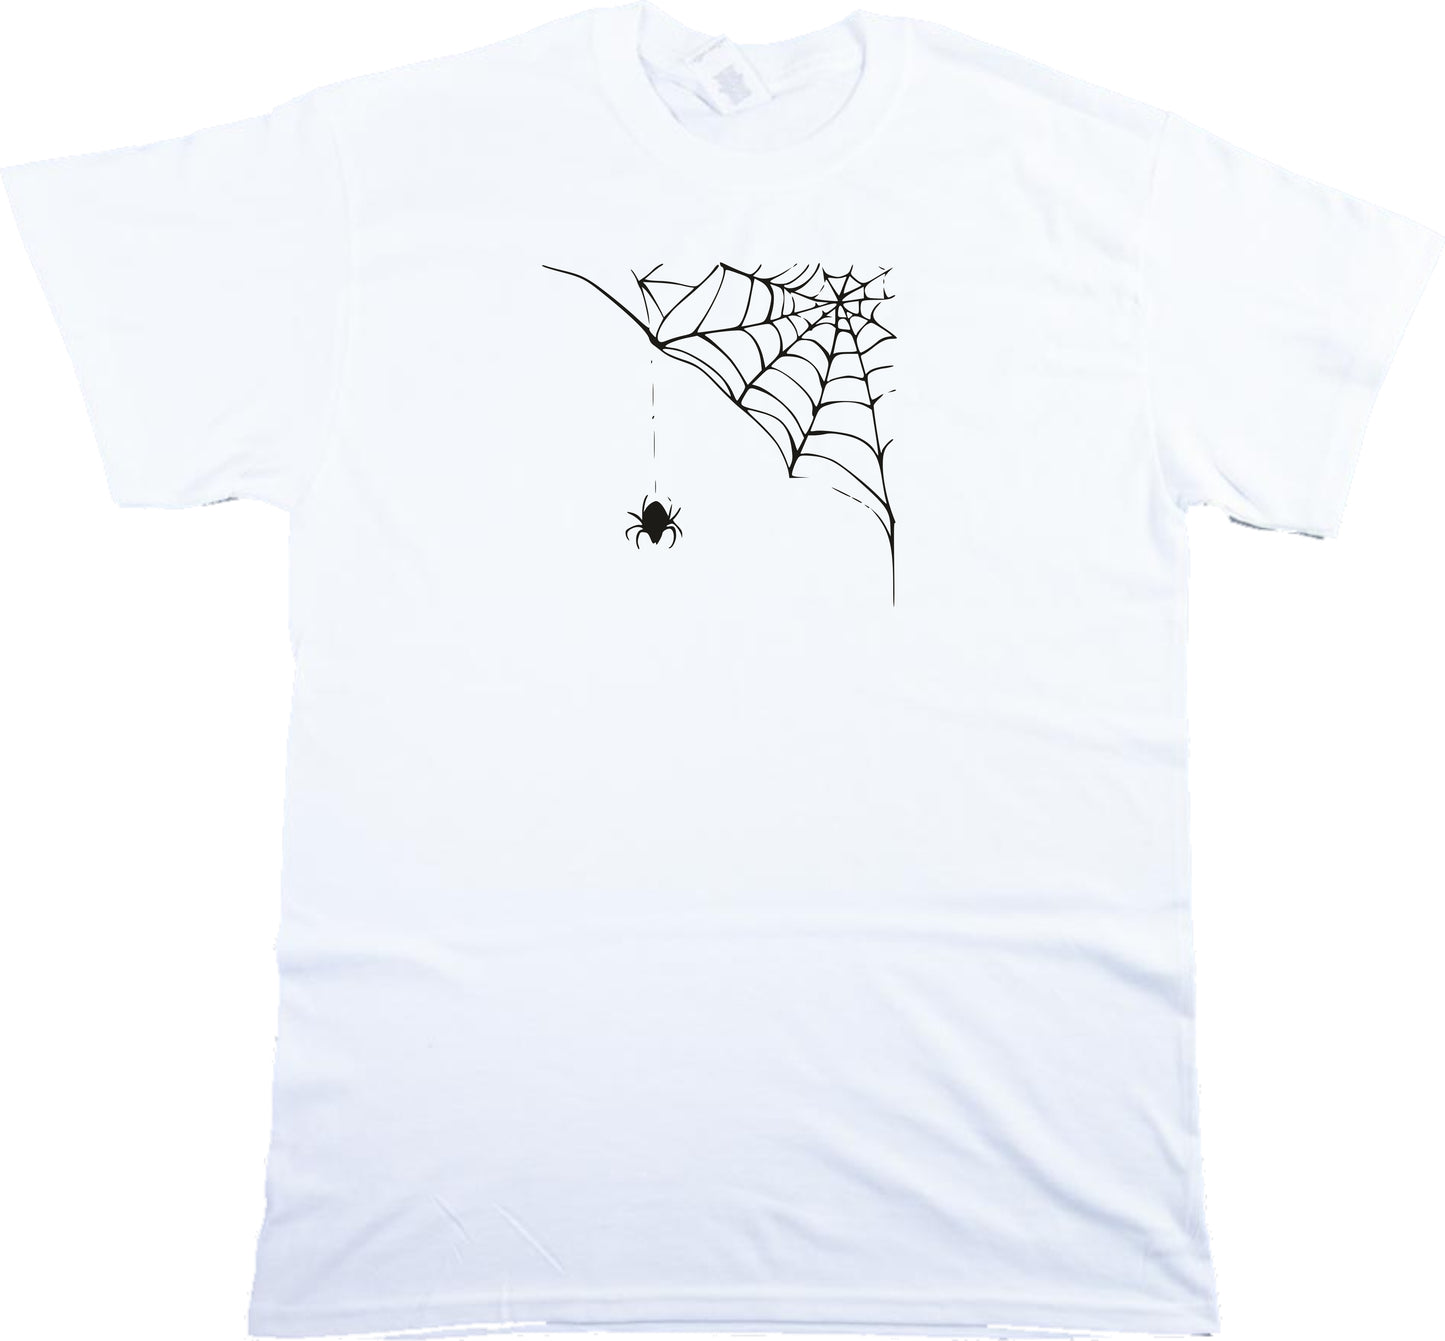 Spider Web T-Shirt - Gothic Horror, S-XXL